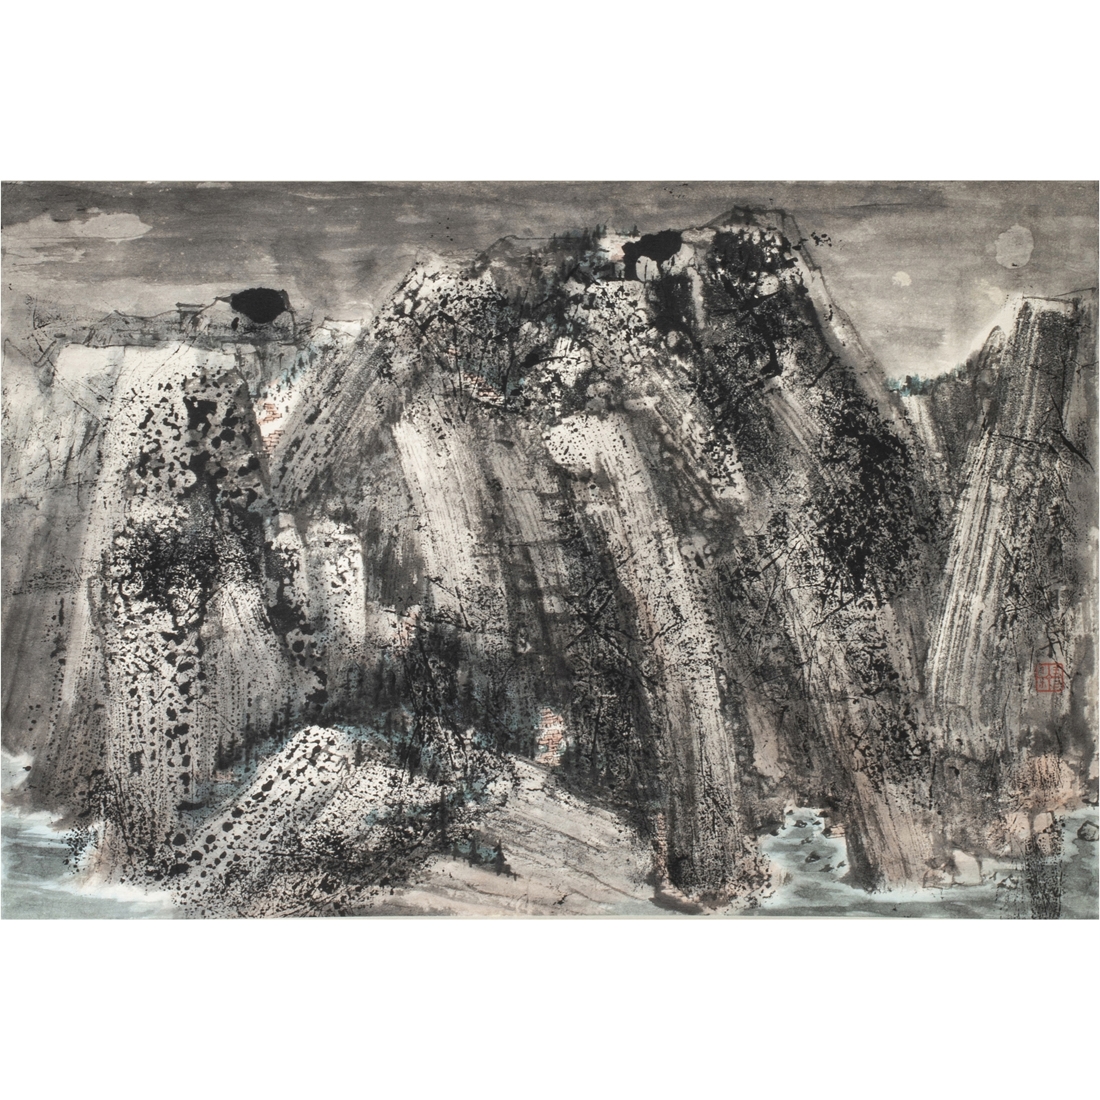 Wang Jiqian (C.C. Wang, 1907-2003) - Landscape - Wang Jiqian